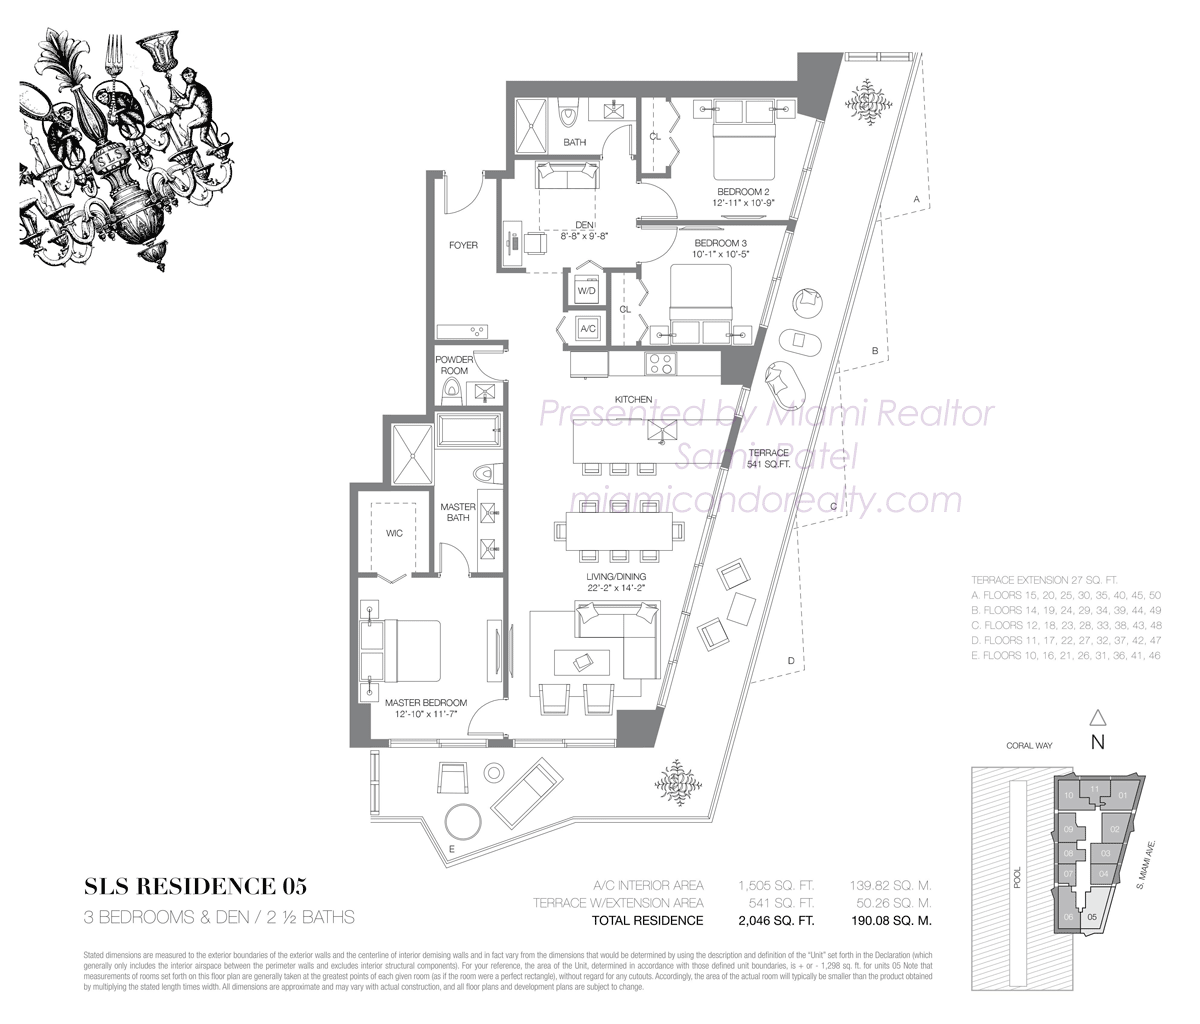 SLS Brickell Residence 05 Floorplan